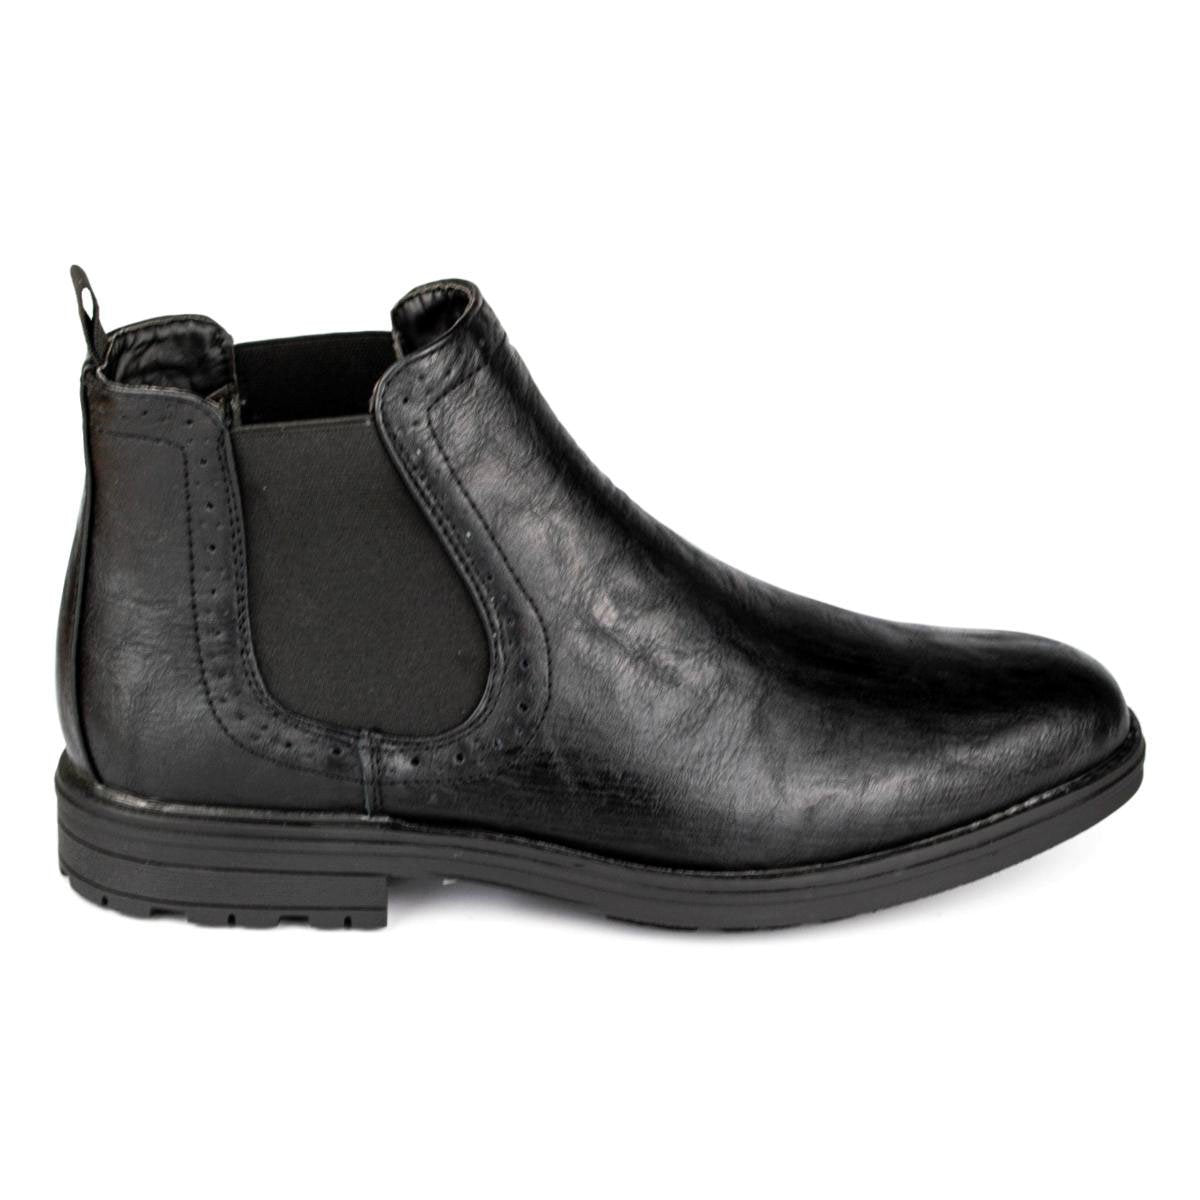 Men's Chelsea Boot in Black - Watney Shoes 